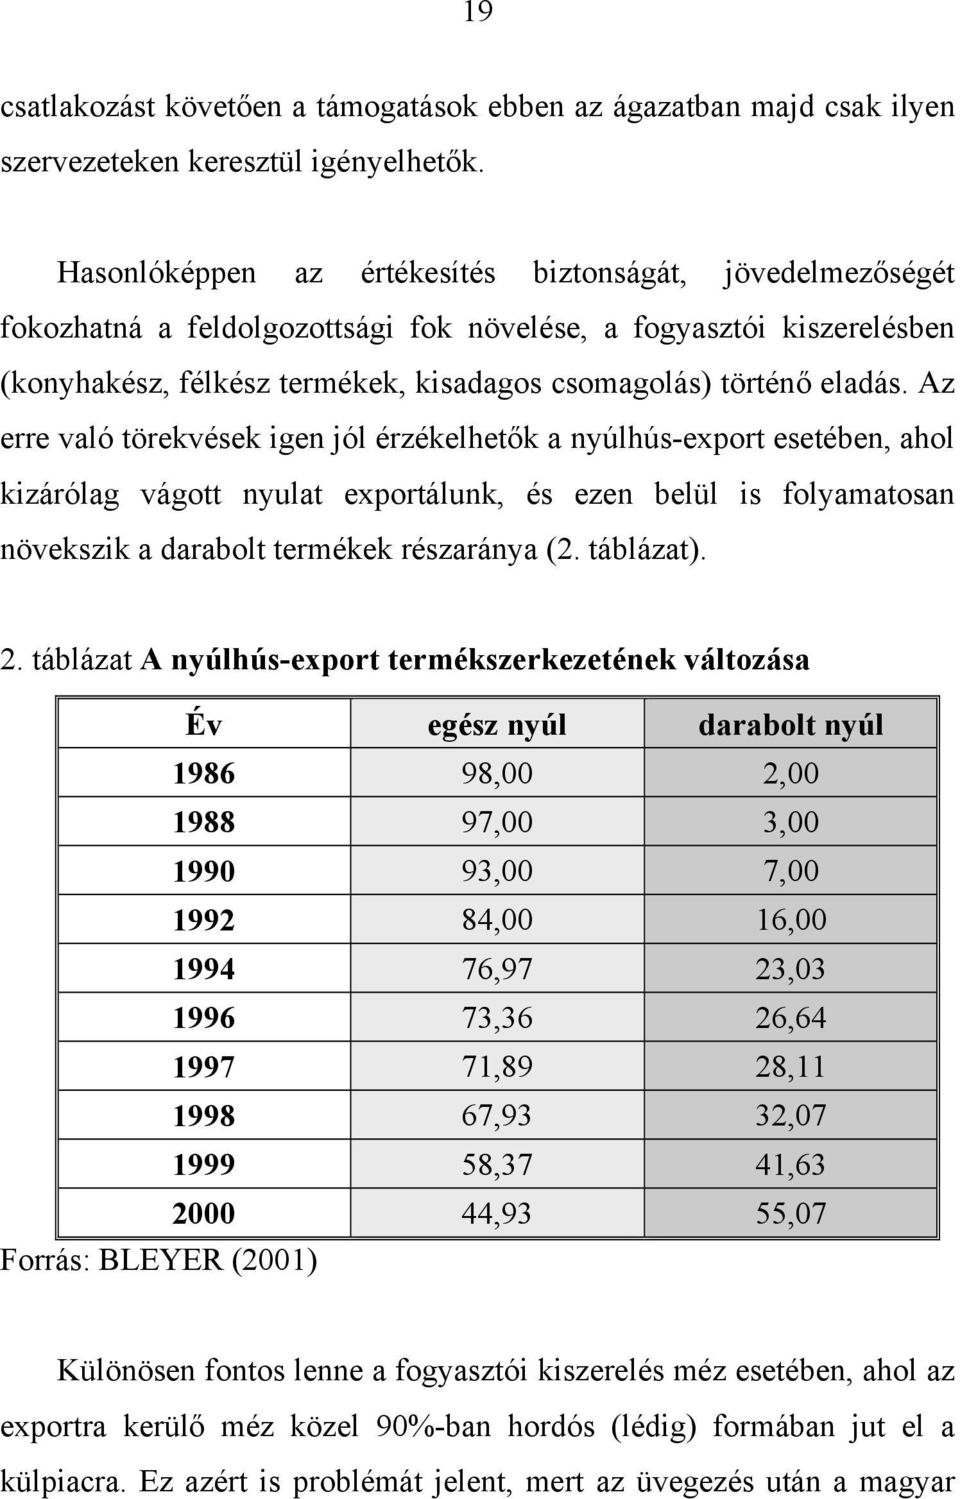 Az erre való törekvések igen jól érzékelhetők a nyúlhús-export esetében, ahol kizárólag vágott nyulat exportálunk, és ezen belül is folyamatosan növekszik a darabolt termékek részaránya (2. táblázat).